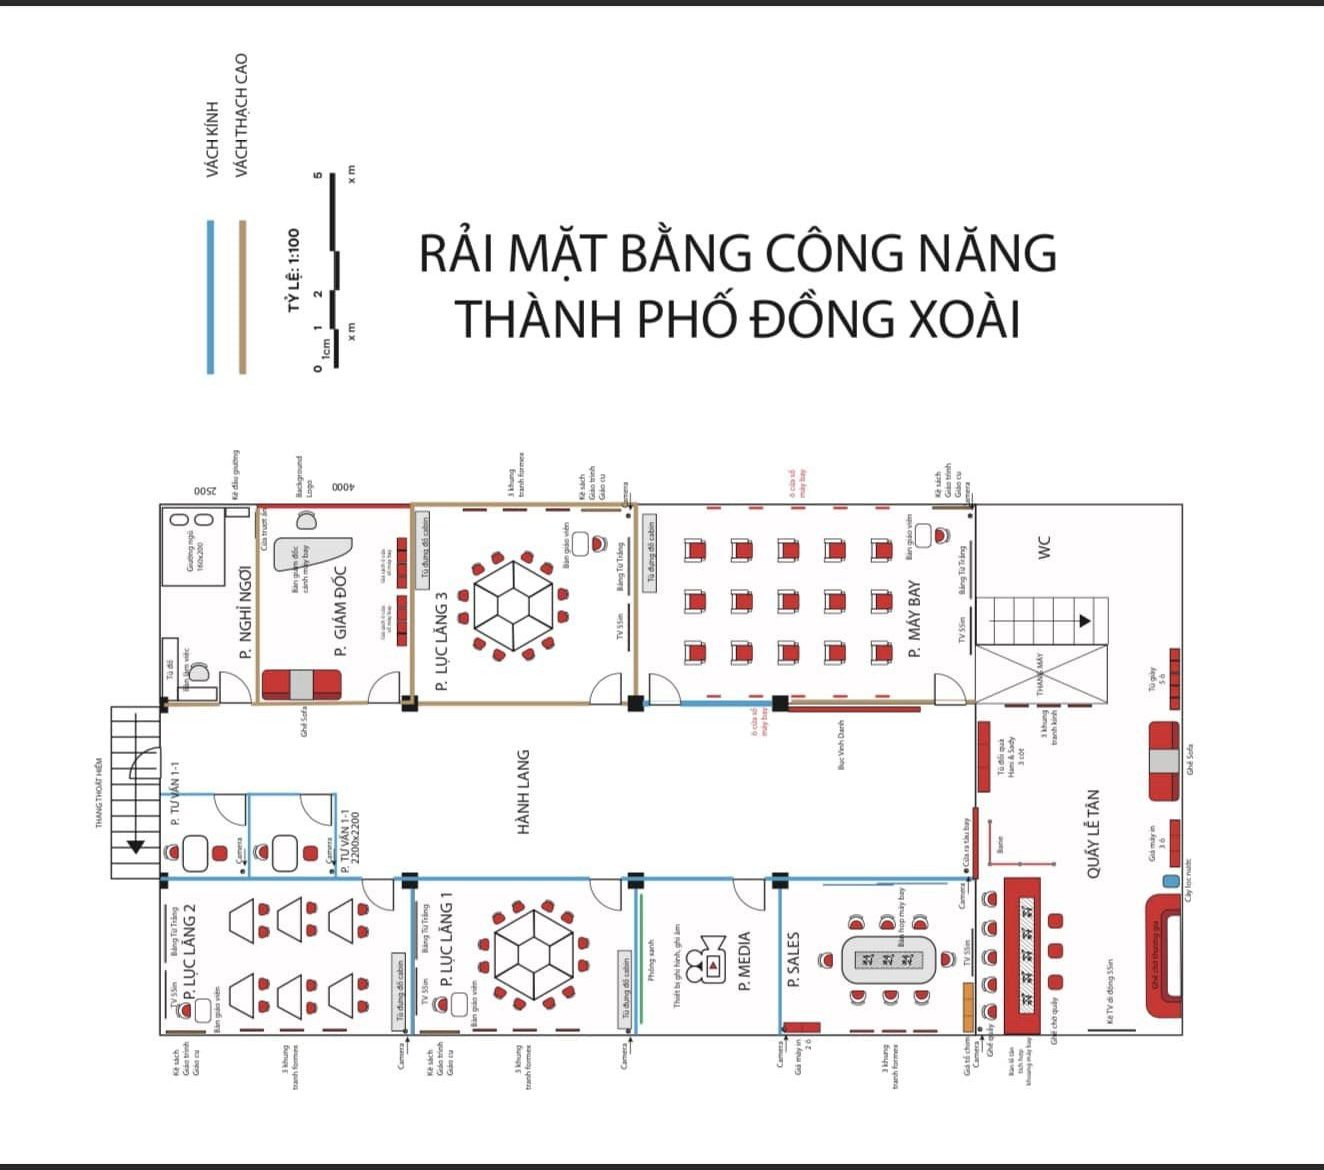 Saigon Connection Thành phố Đồng Xoài